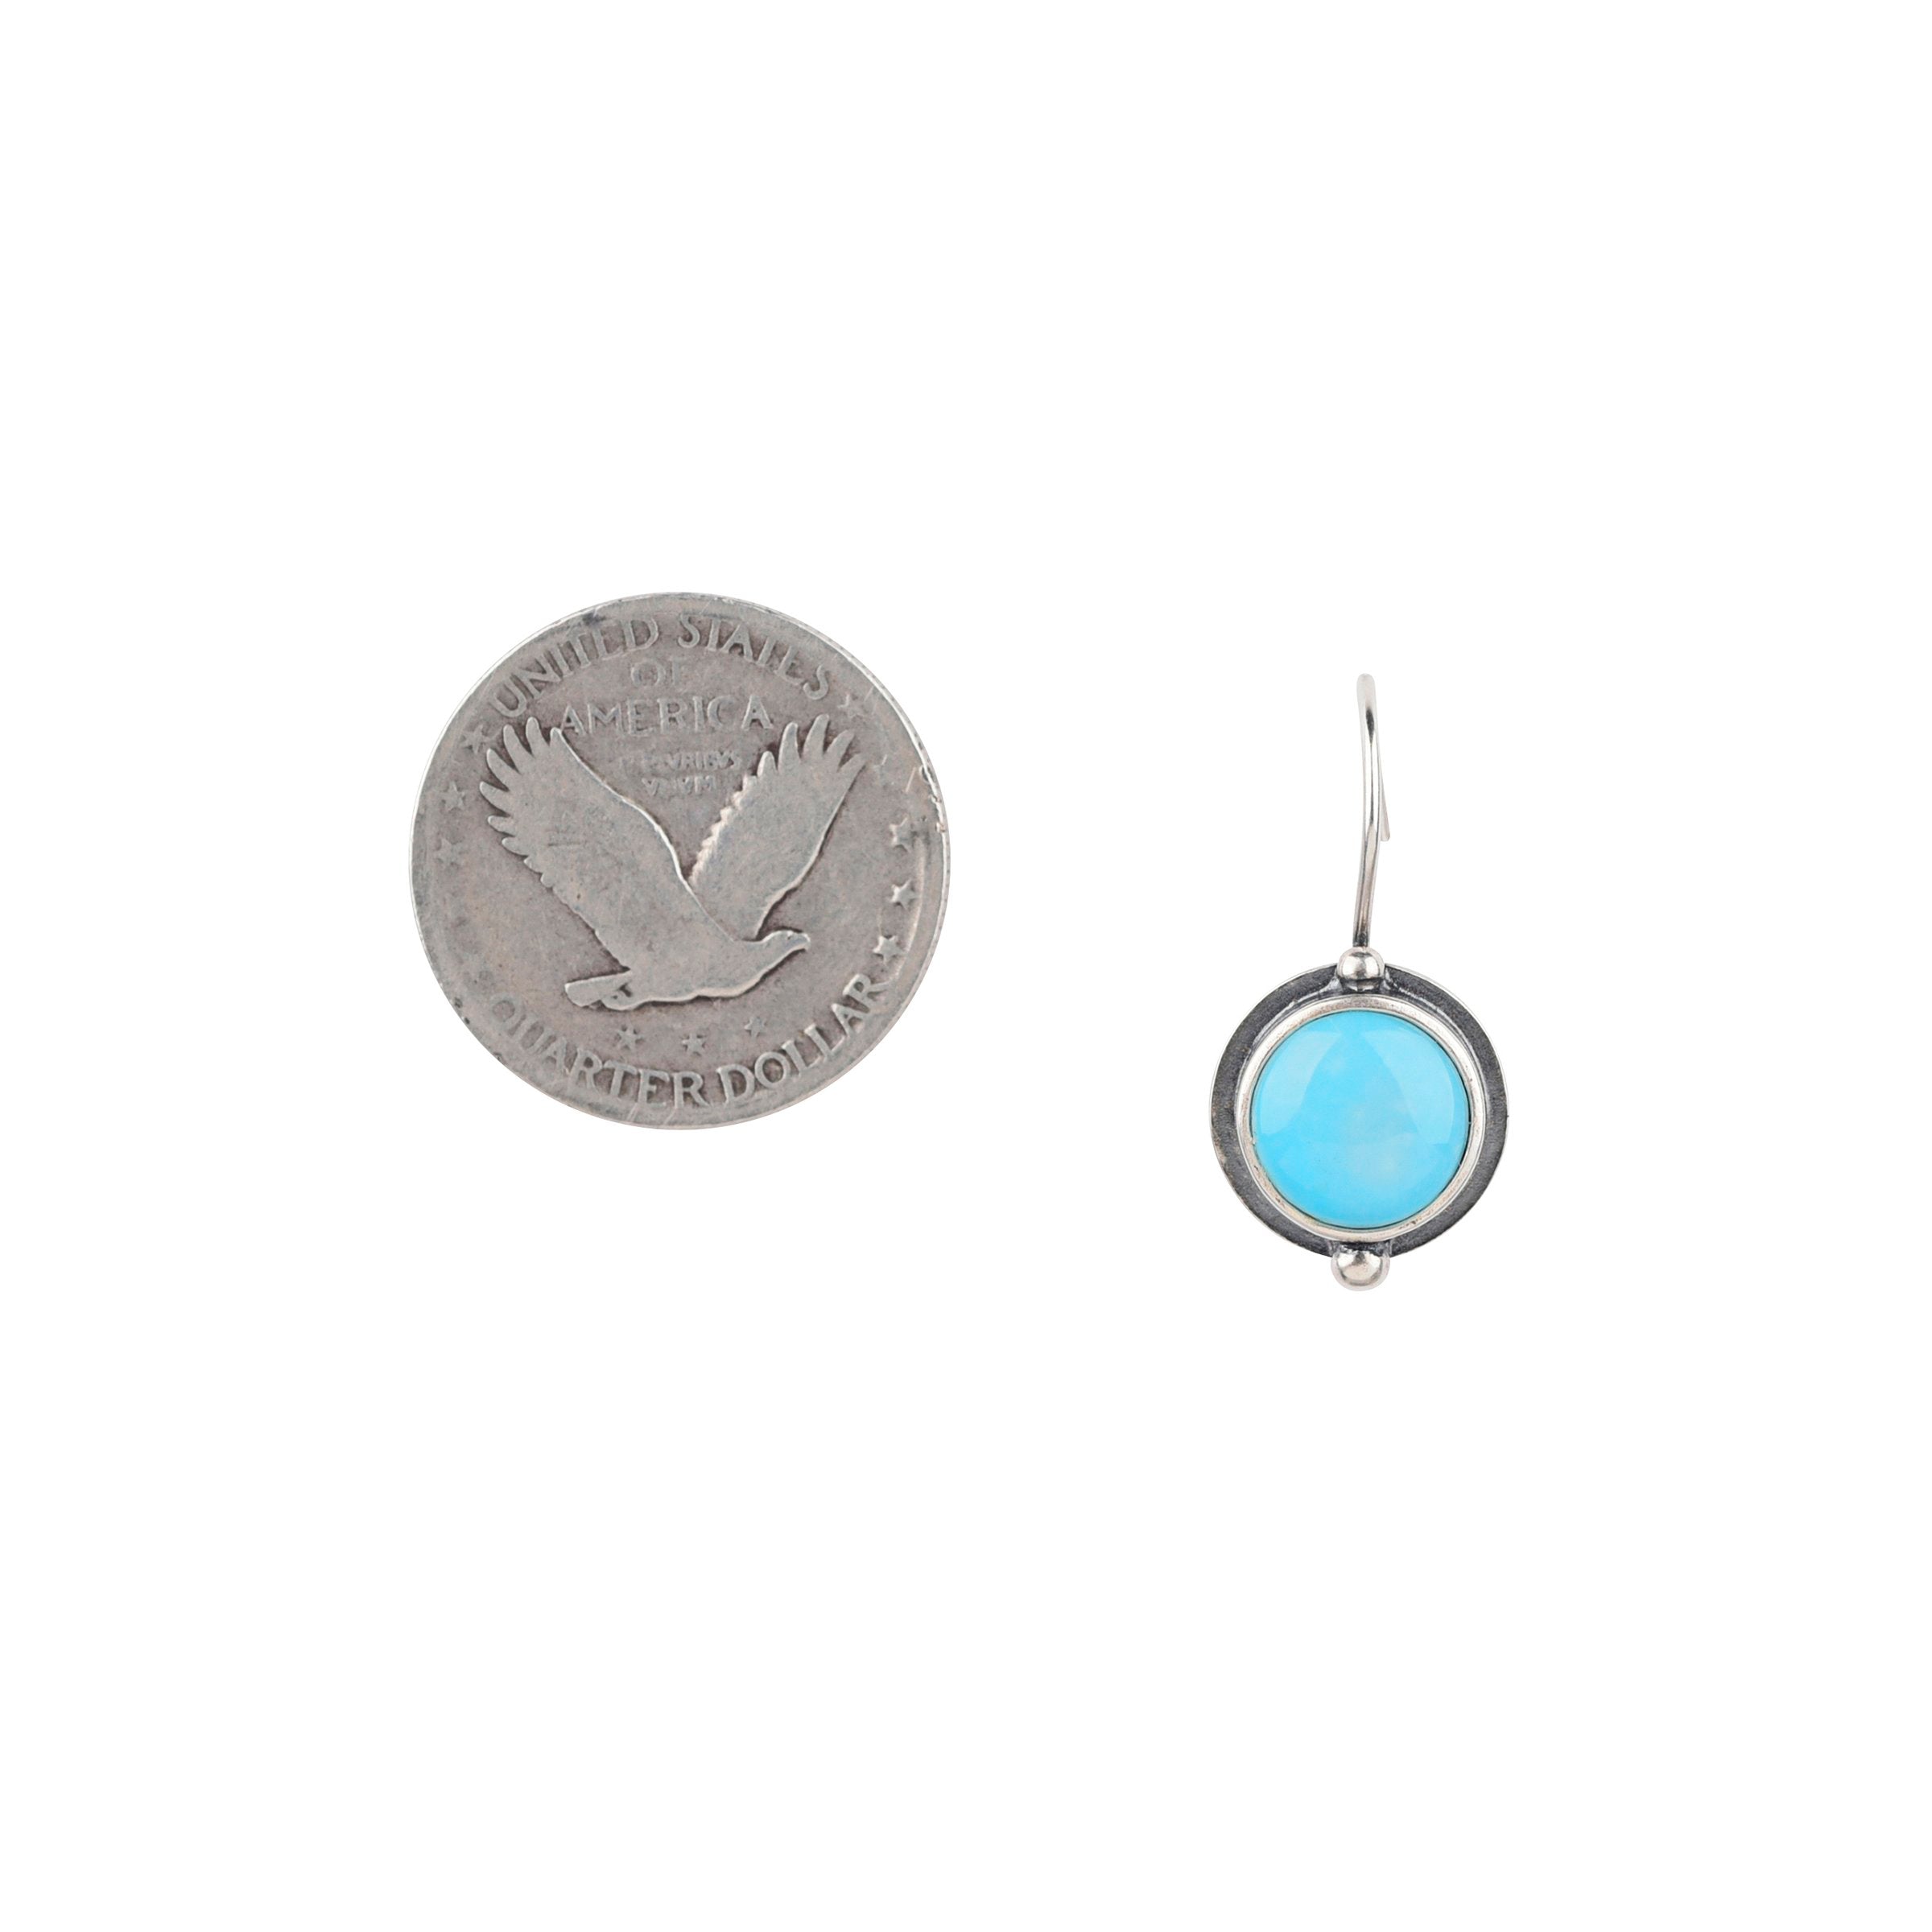 Dennis Hogan Full Moon Earrings - Turquoise